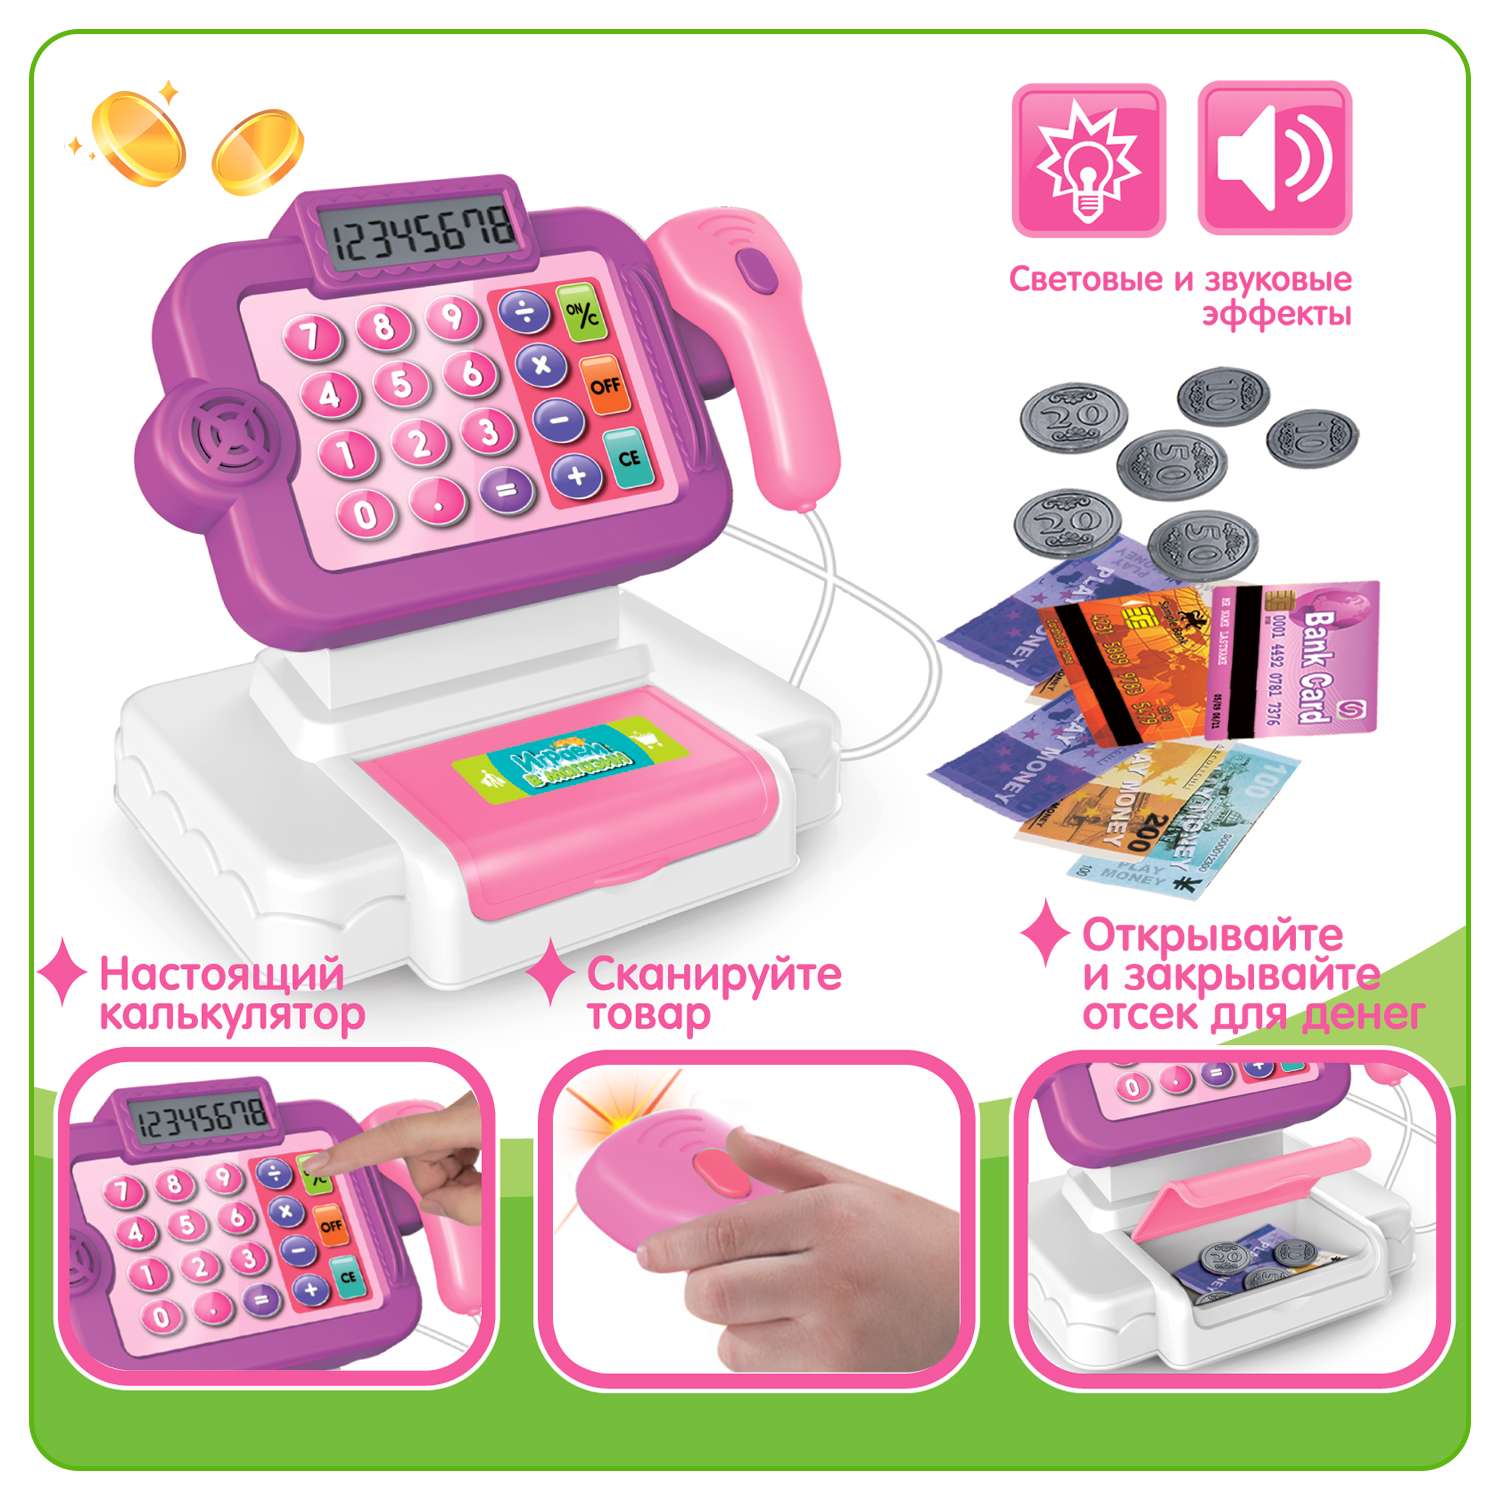 Развивающий игровой набор BONDIBON детская касса со сканером калькулятором и аксессуарами 14 предметов - фото 2